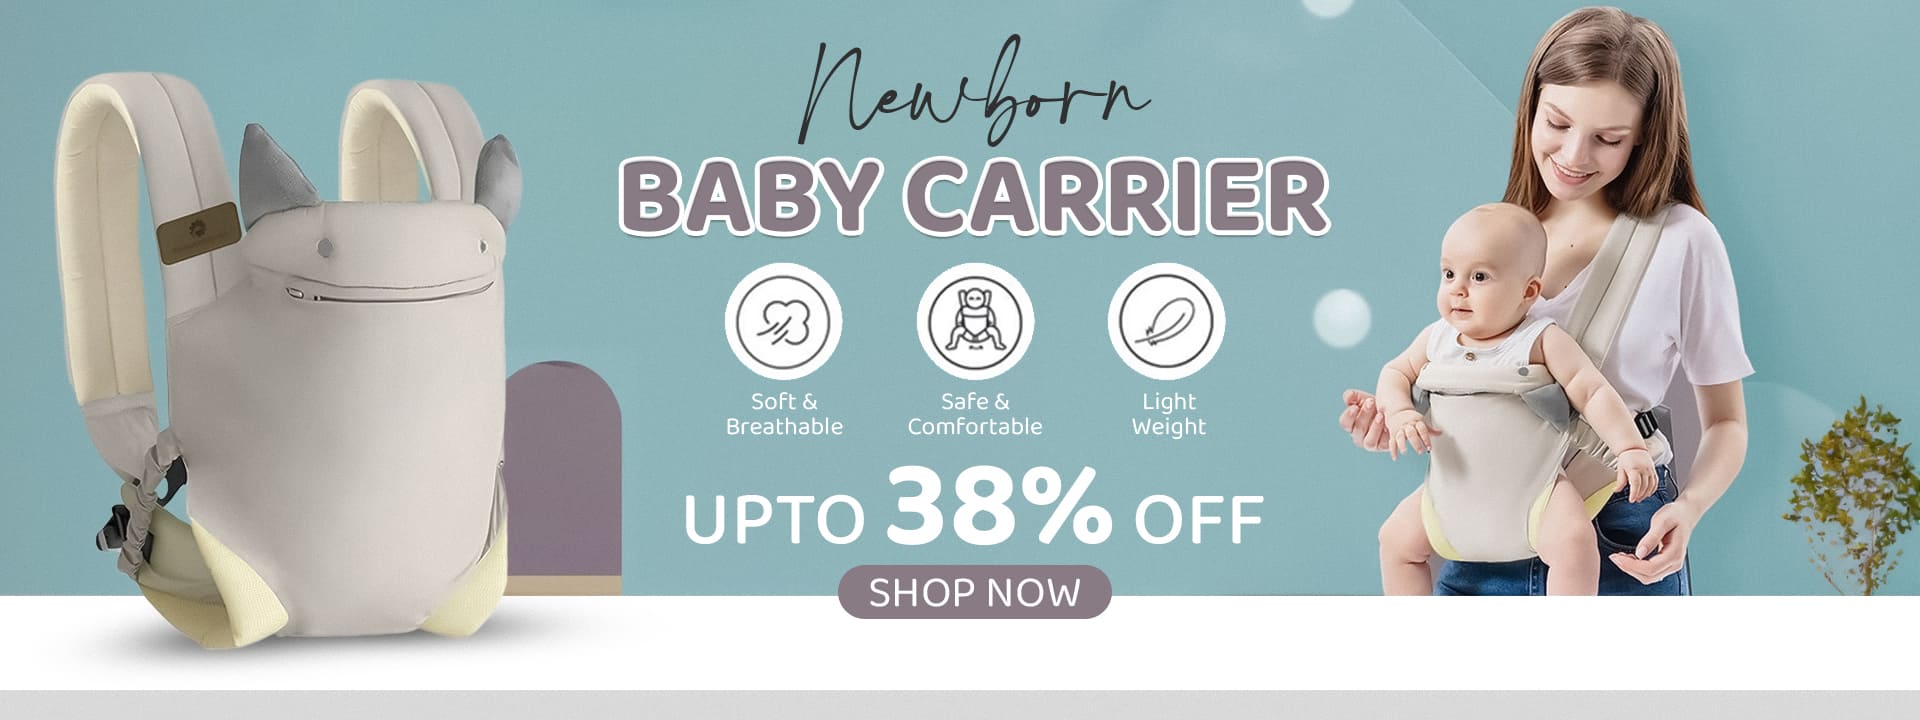 Newborn Baby Carrier